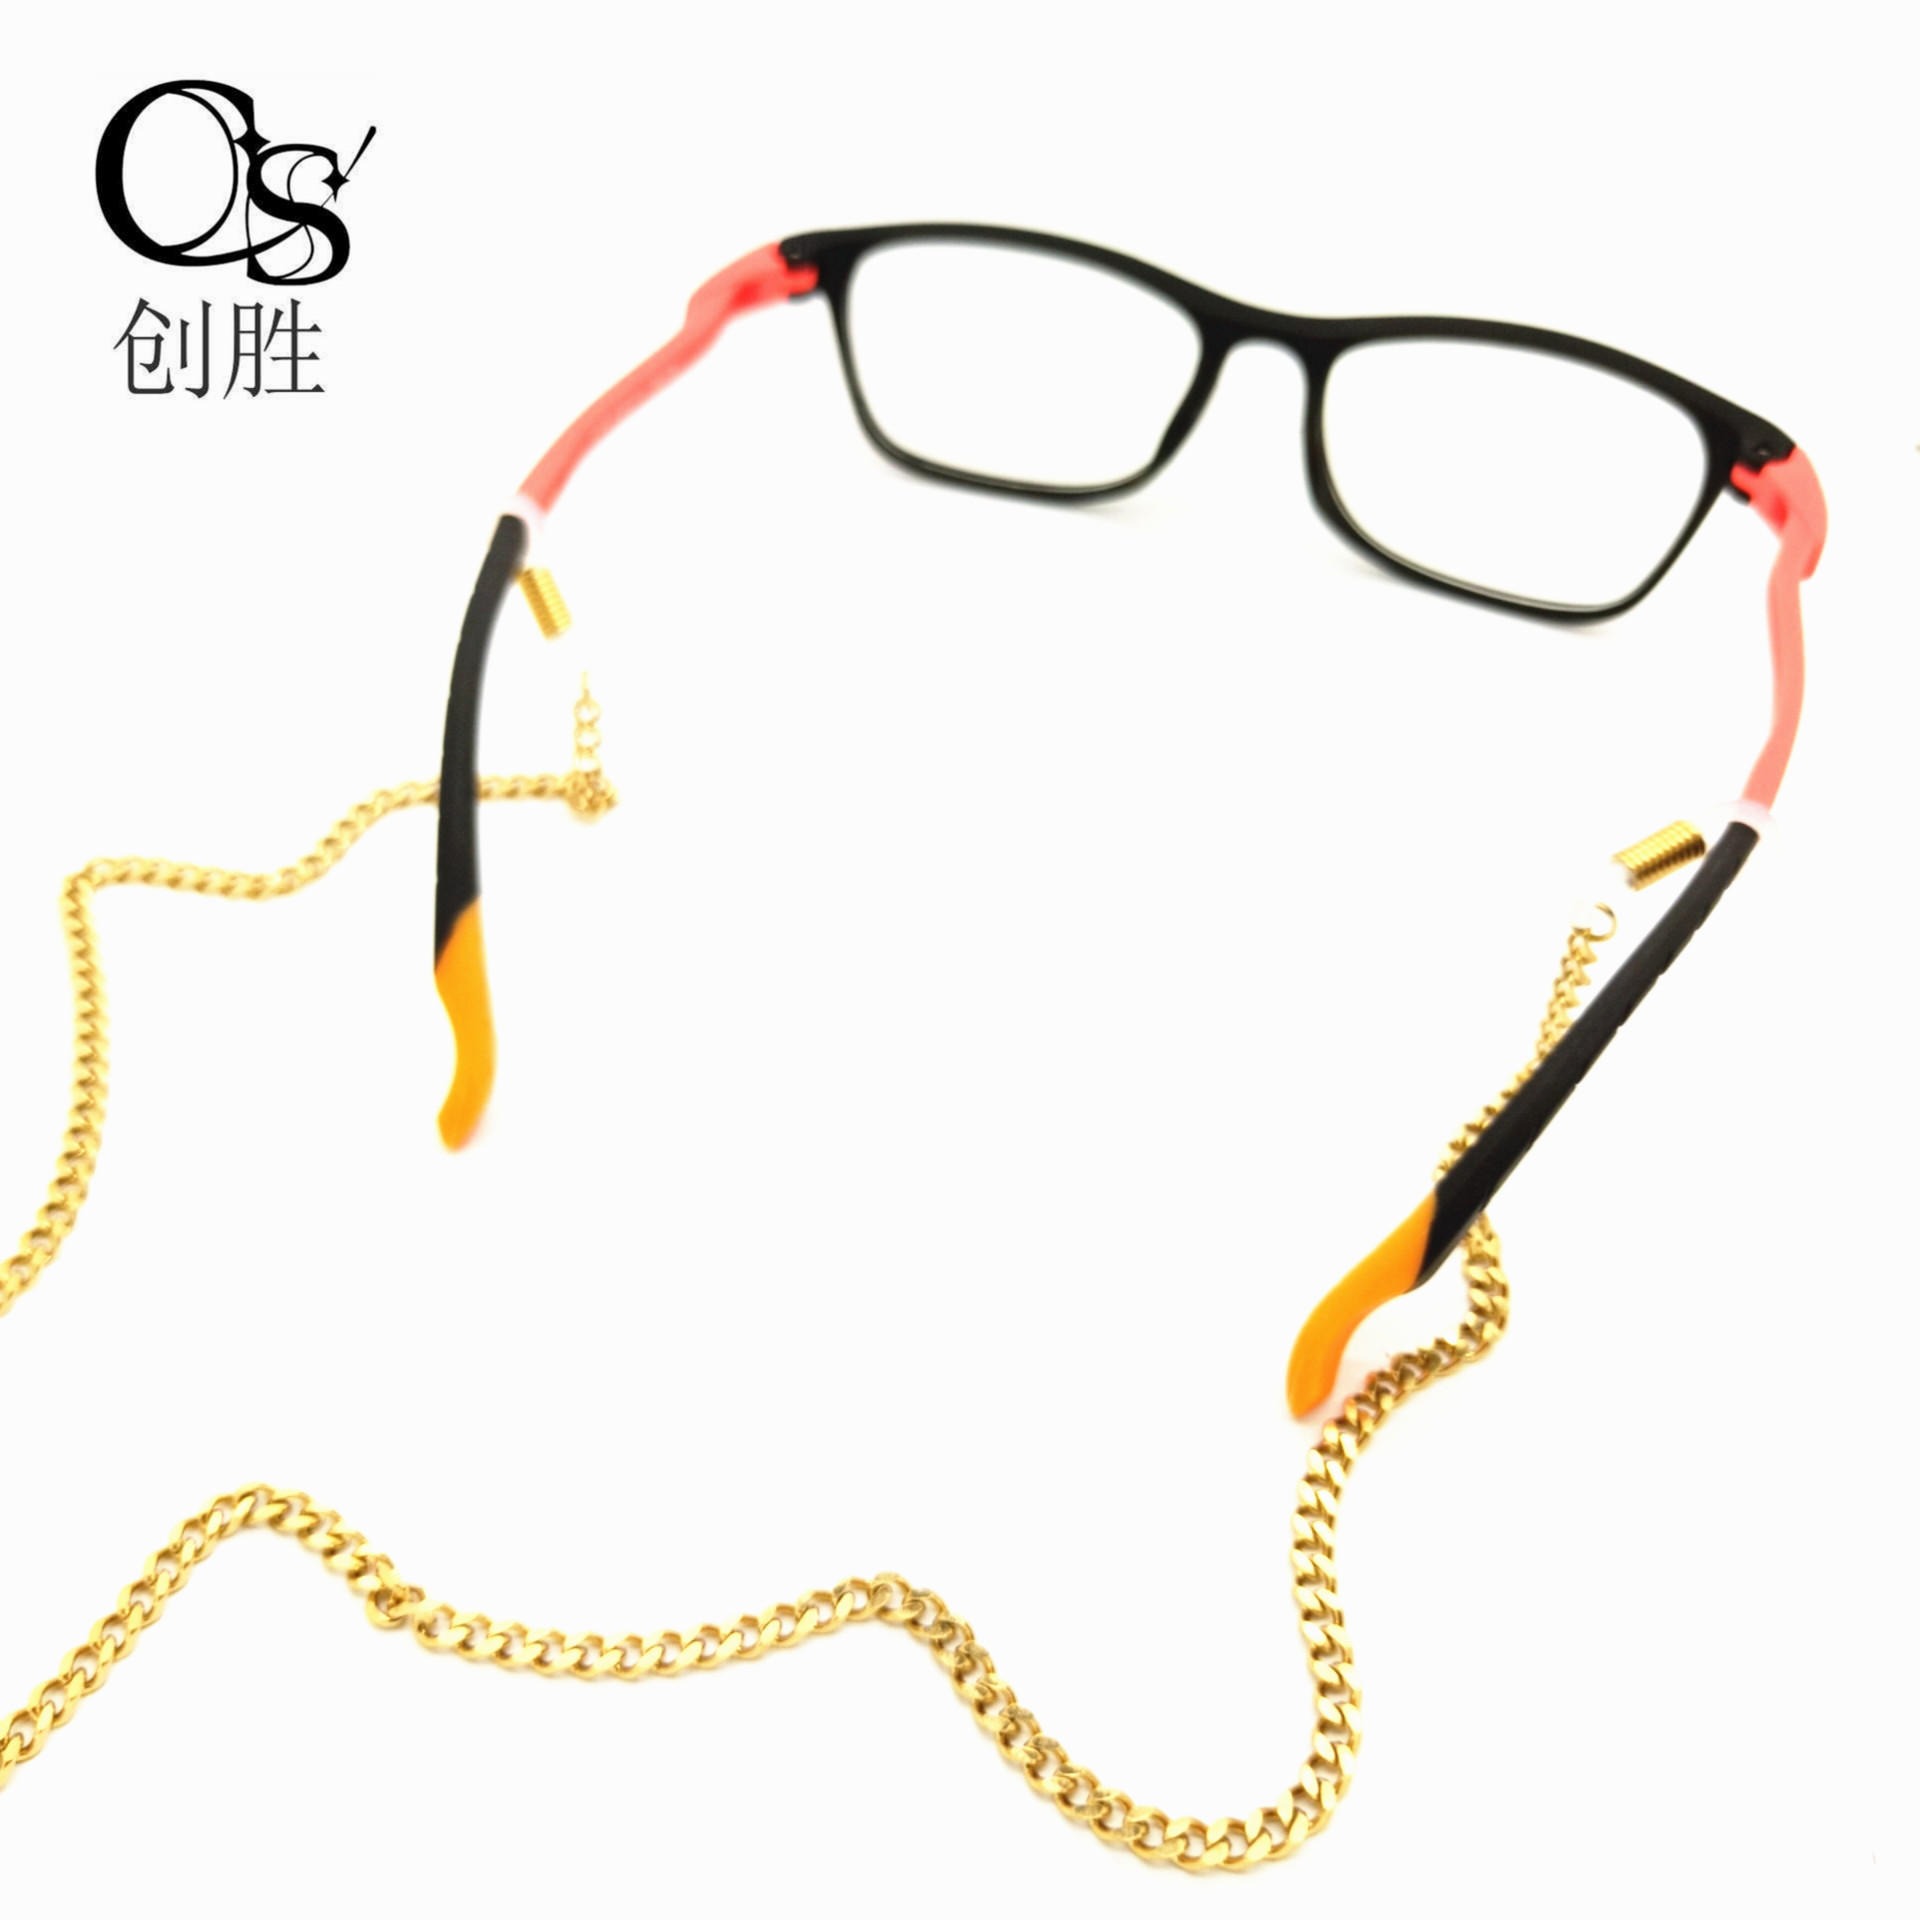 欧美新品眼镜链金属眼镜绳防滑链时尚太阳镜眼镜链防掉挂绳眼镜配件饰品厂家直销可私人订制